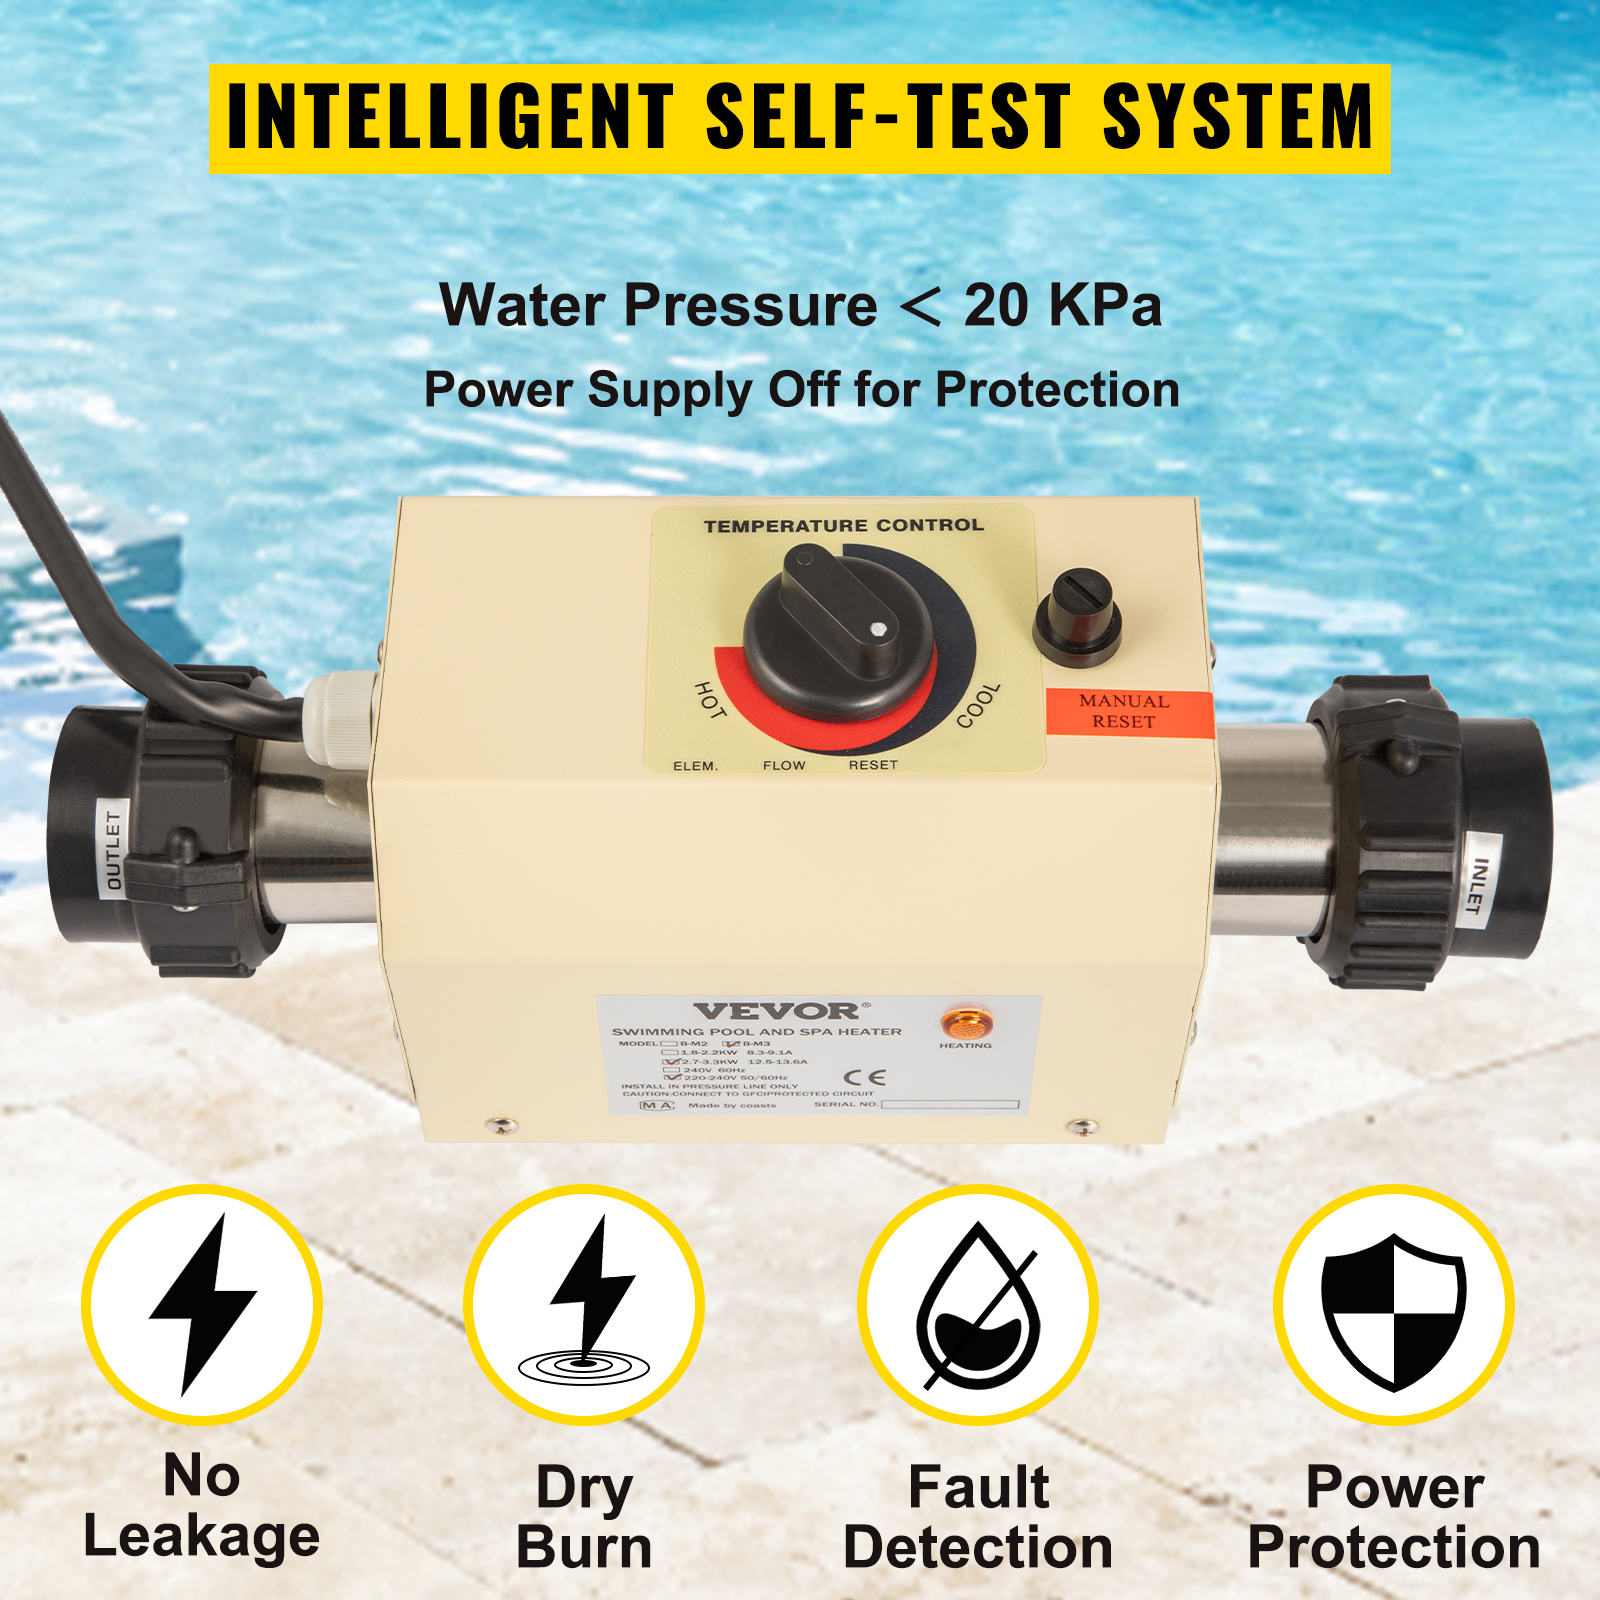 VEVOR termosztát 2KW termosztát úszómedencei medence fűtéshez elektromos termosztát vízálló úszómedence úszómedence SPA pezsgőfürdő elektromos vízmelegítő szivattyú asszisztens digitális termosztát